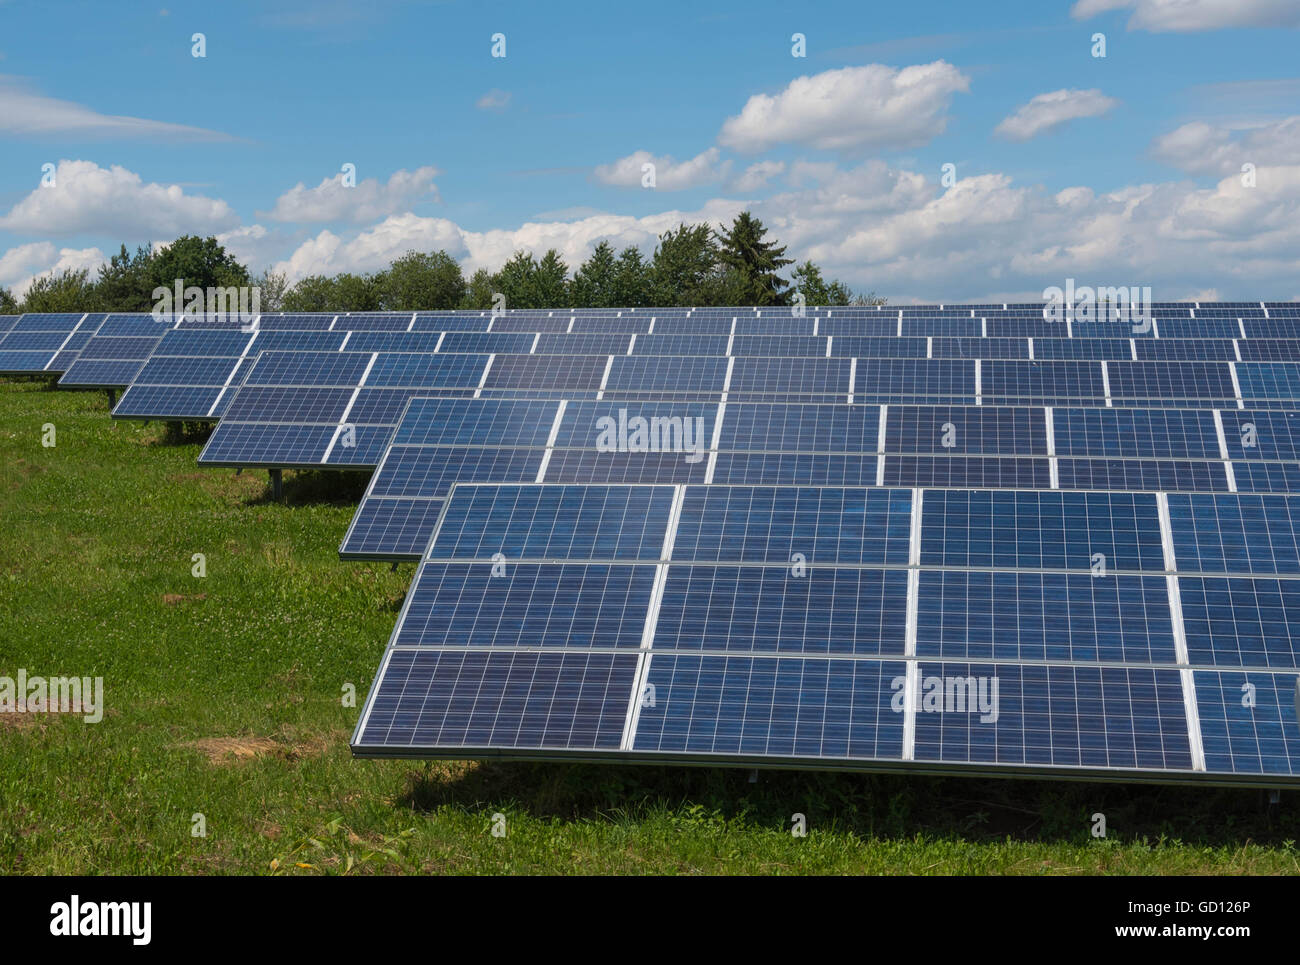 Installation solaire - panneaux photovoltaïque - energie renouvelable Banque D'Images